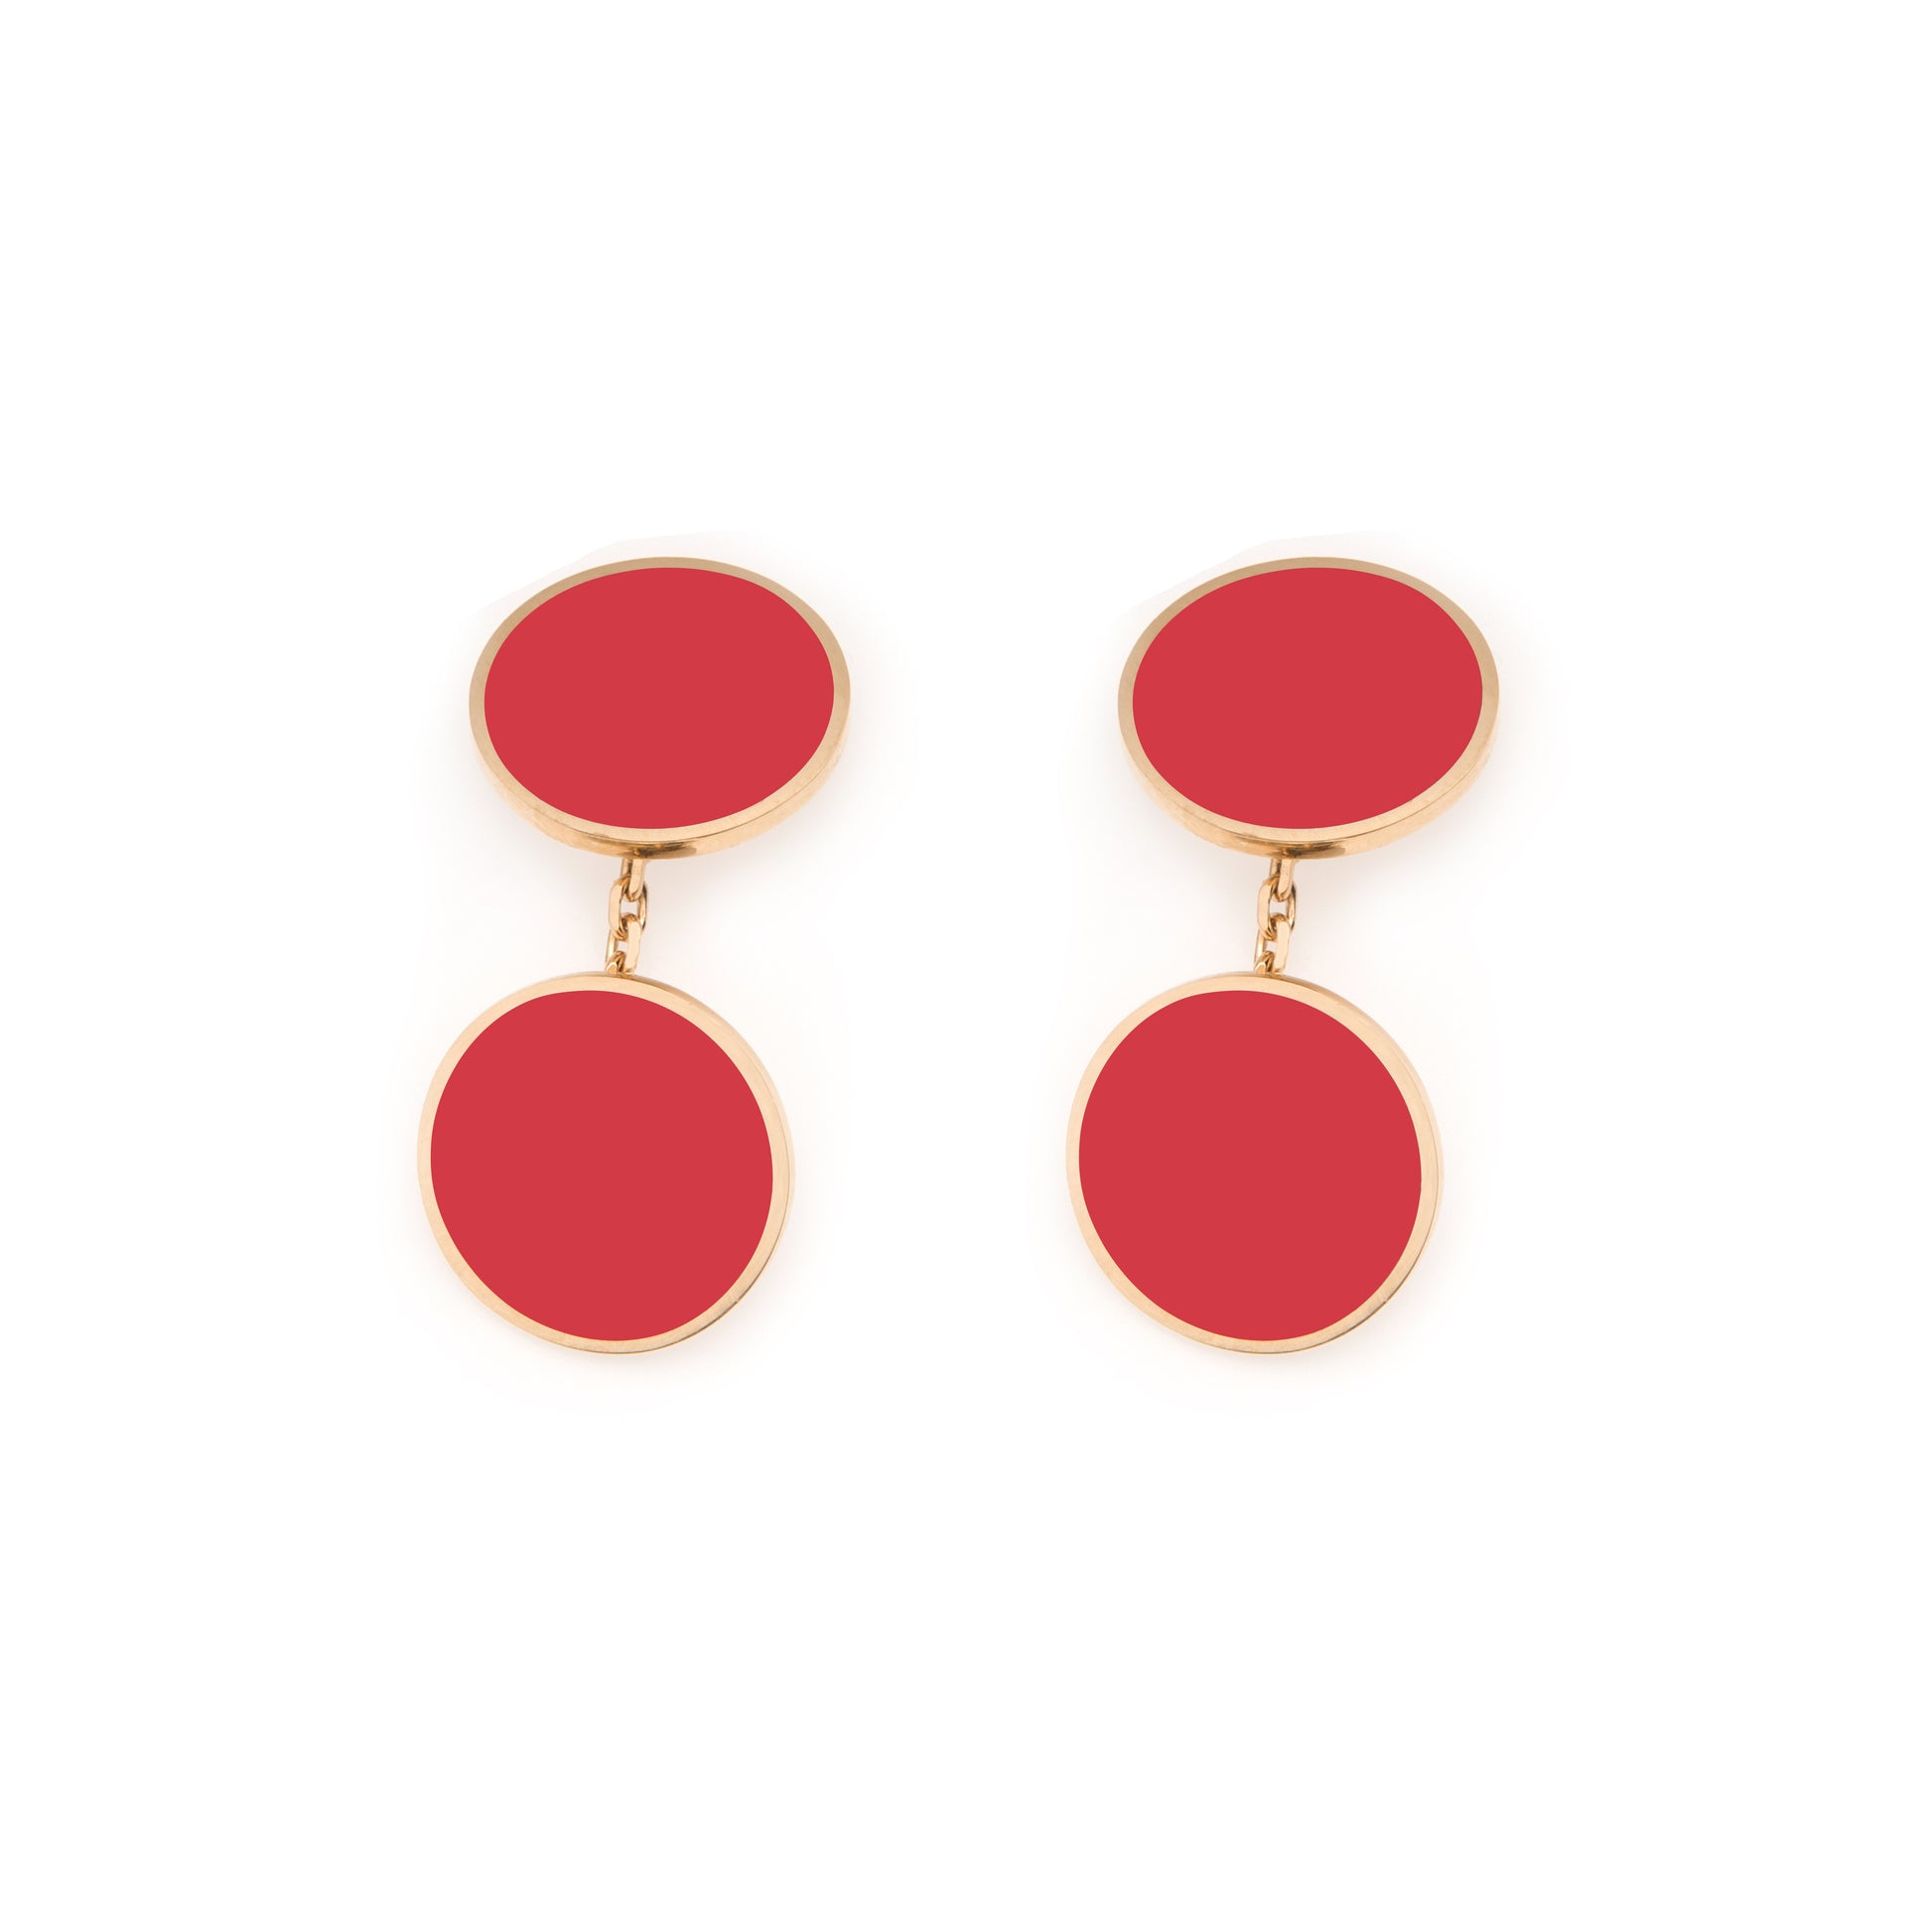 MORA bijoux boutons de manchette ronds en or 18 carats  émaillés rouge, montés sur une chaînette forçat. Disponibles dans d'autres couleurs.